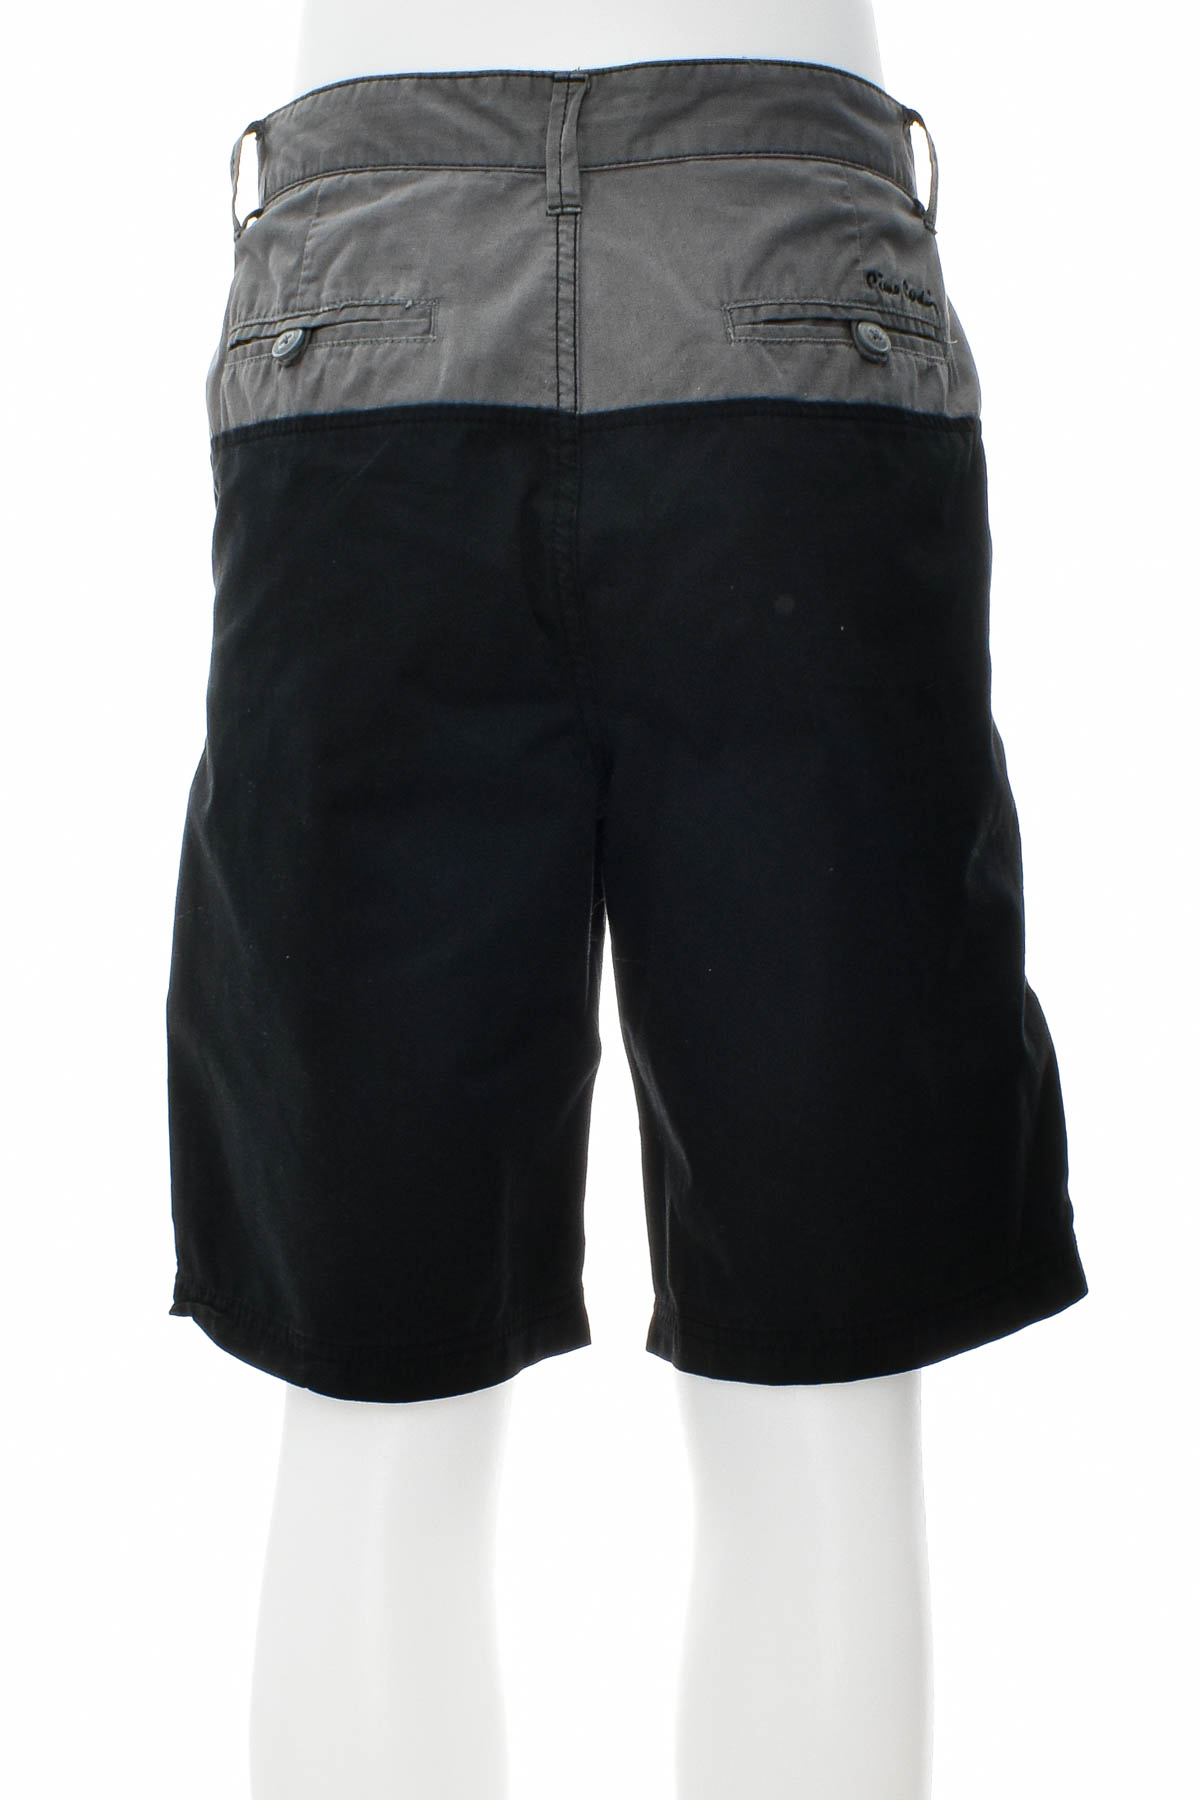 Men's shorts - Pierre Cardin - 1